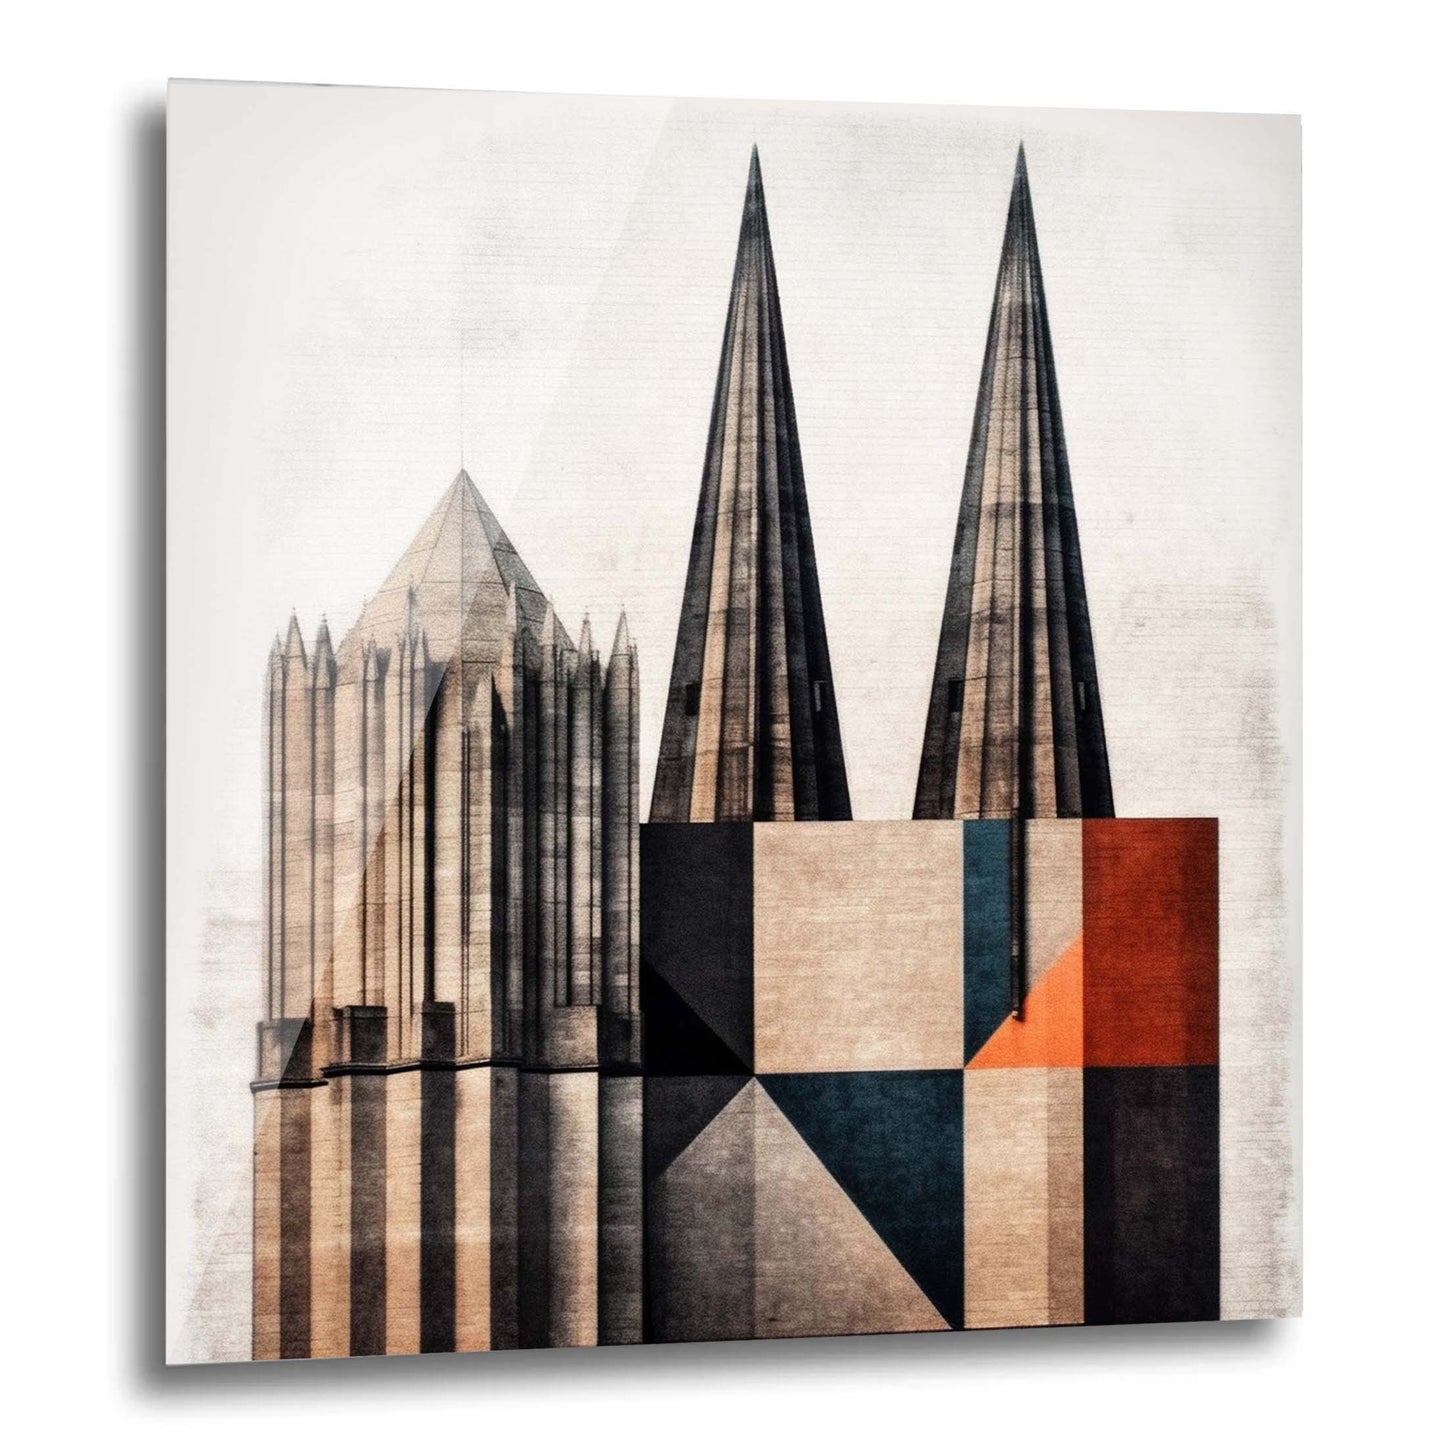 Cathédrale de Cologne - peinture murale dans le style du minimalisme